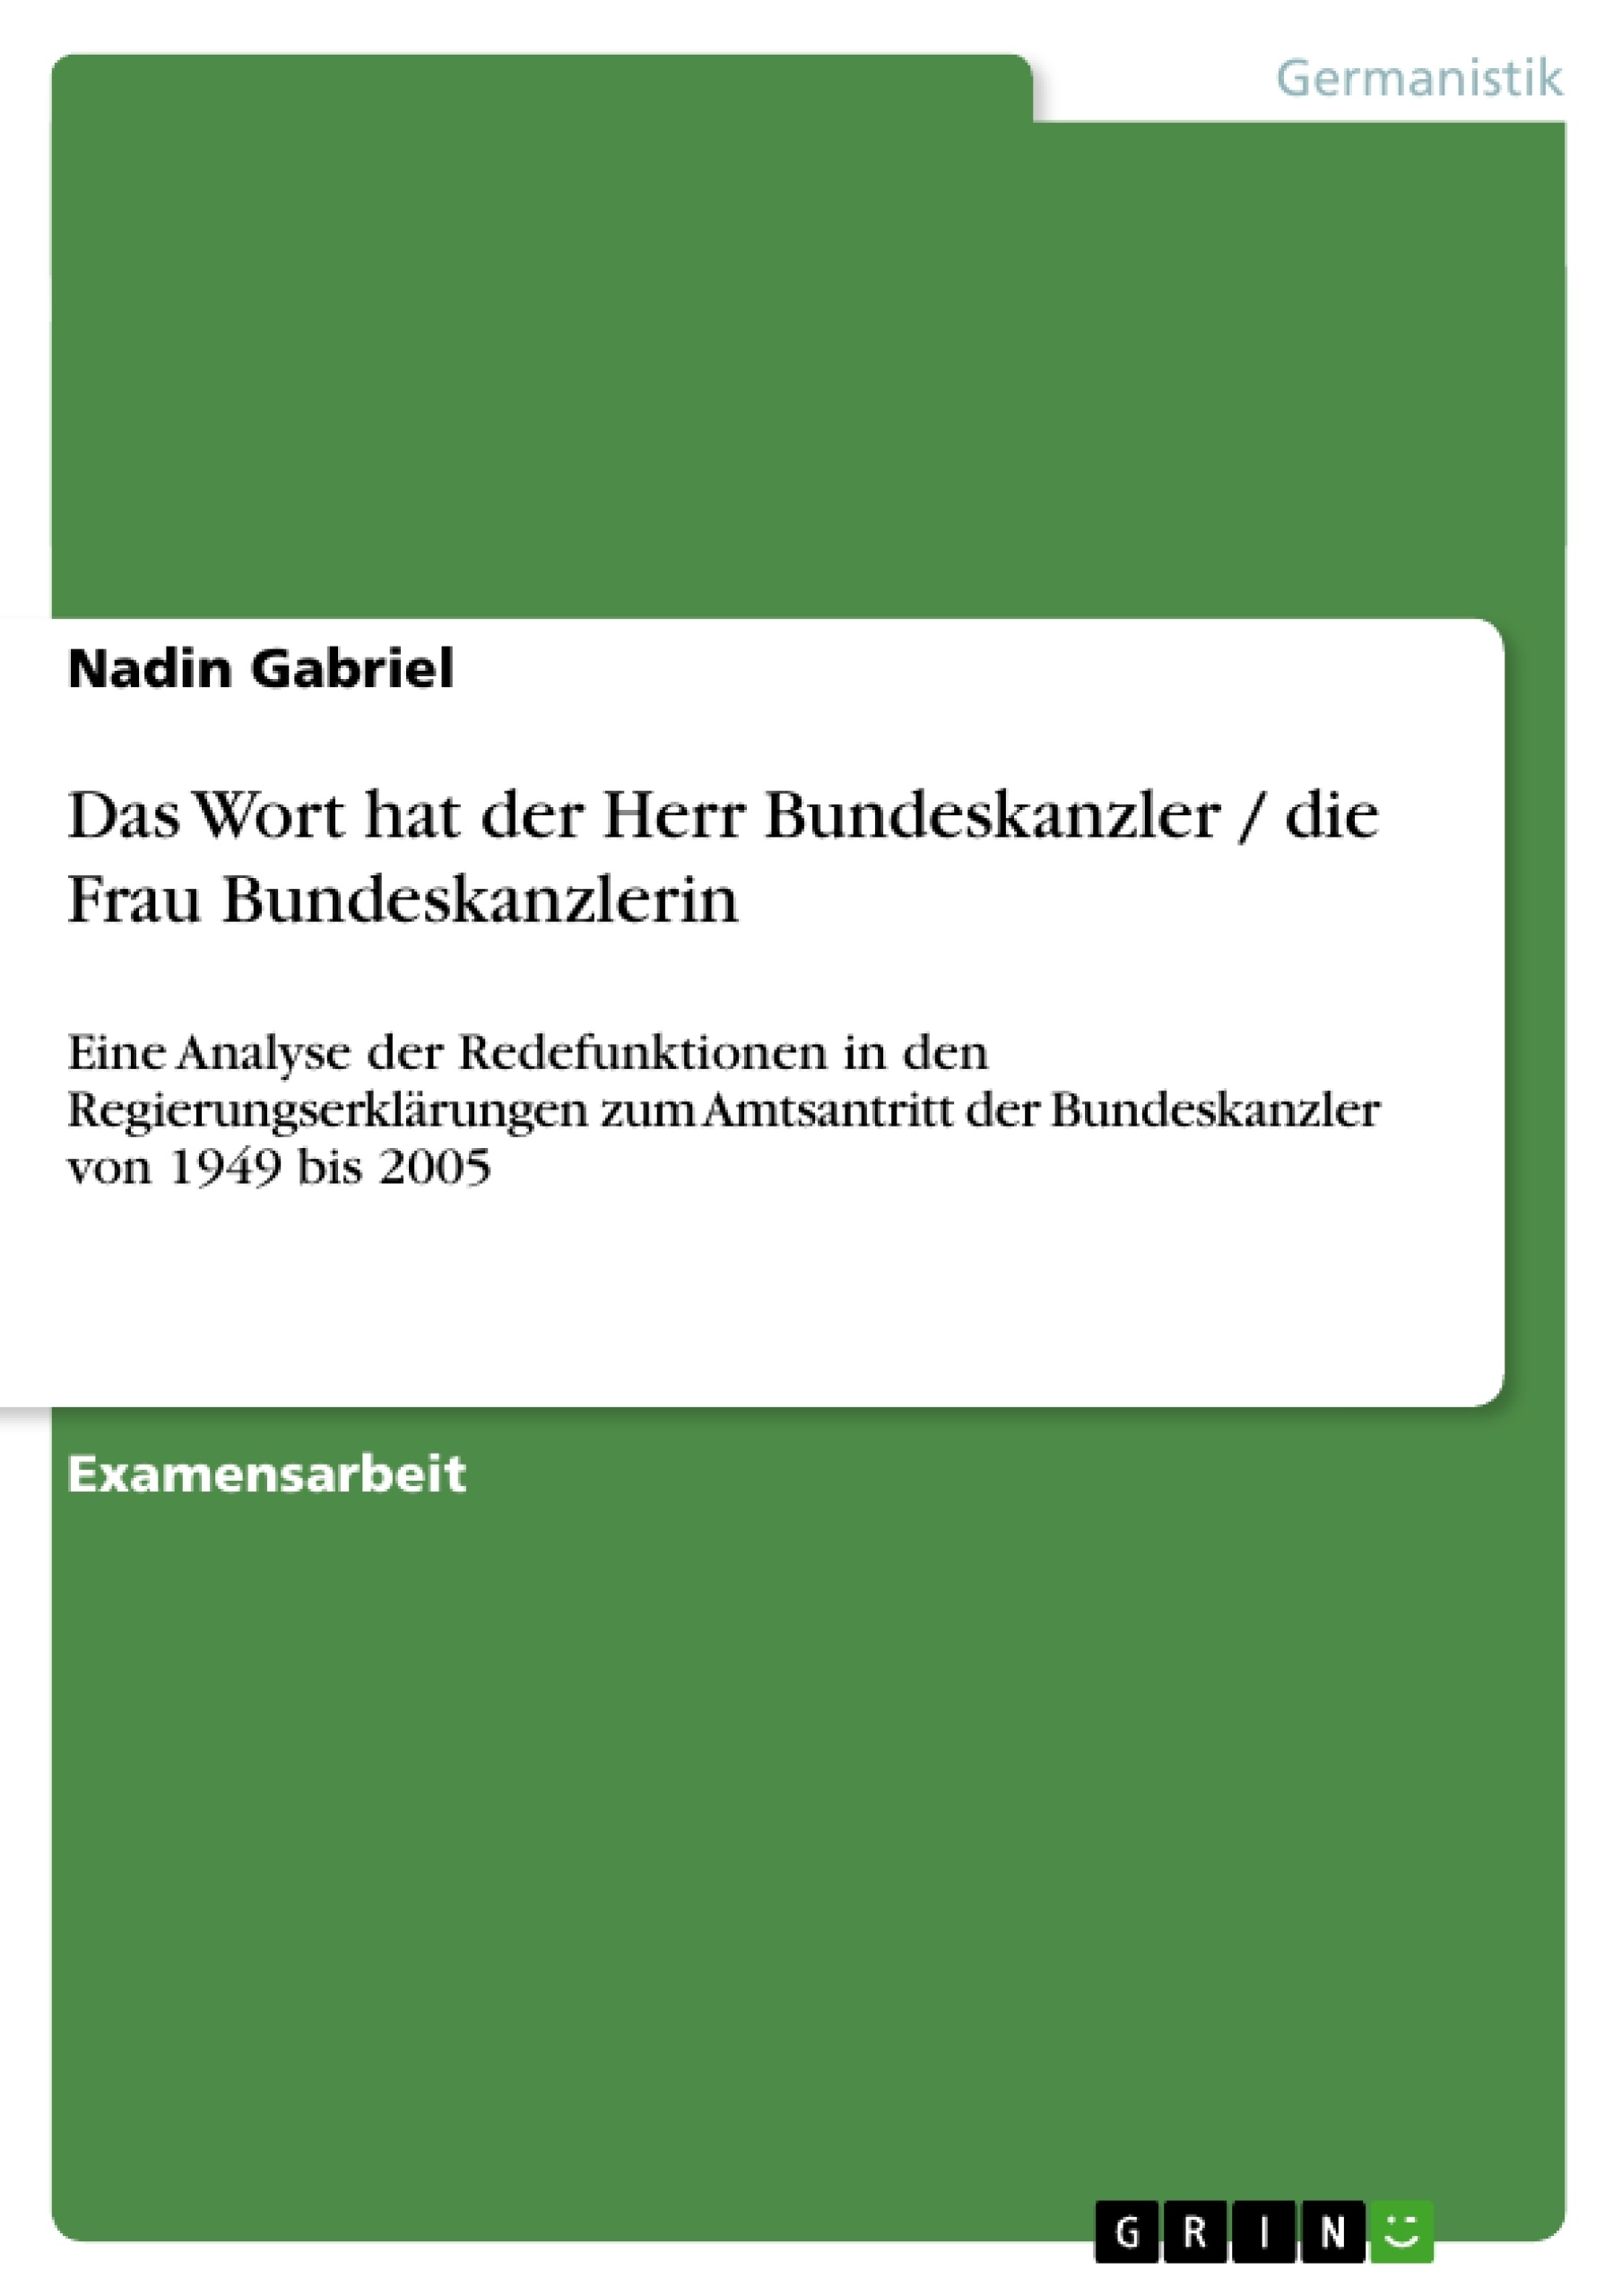 Título: Das Wort hat der Herr Bundeskanzler / die Frau Bundeskanzlerin